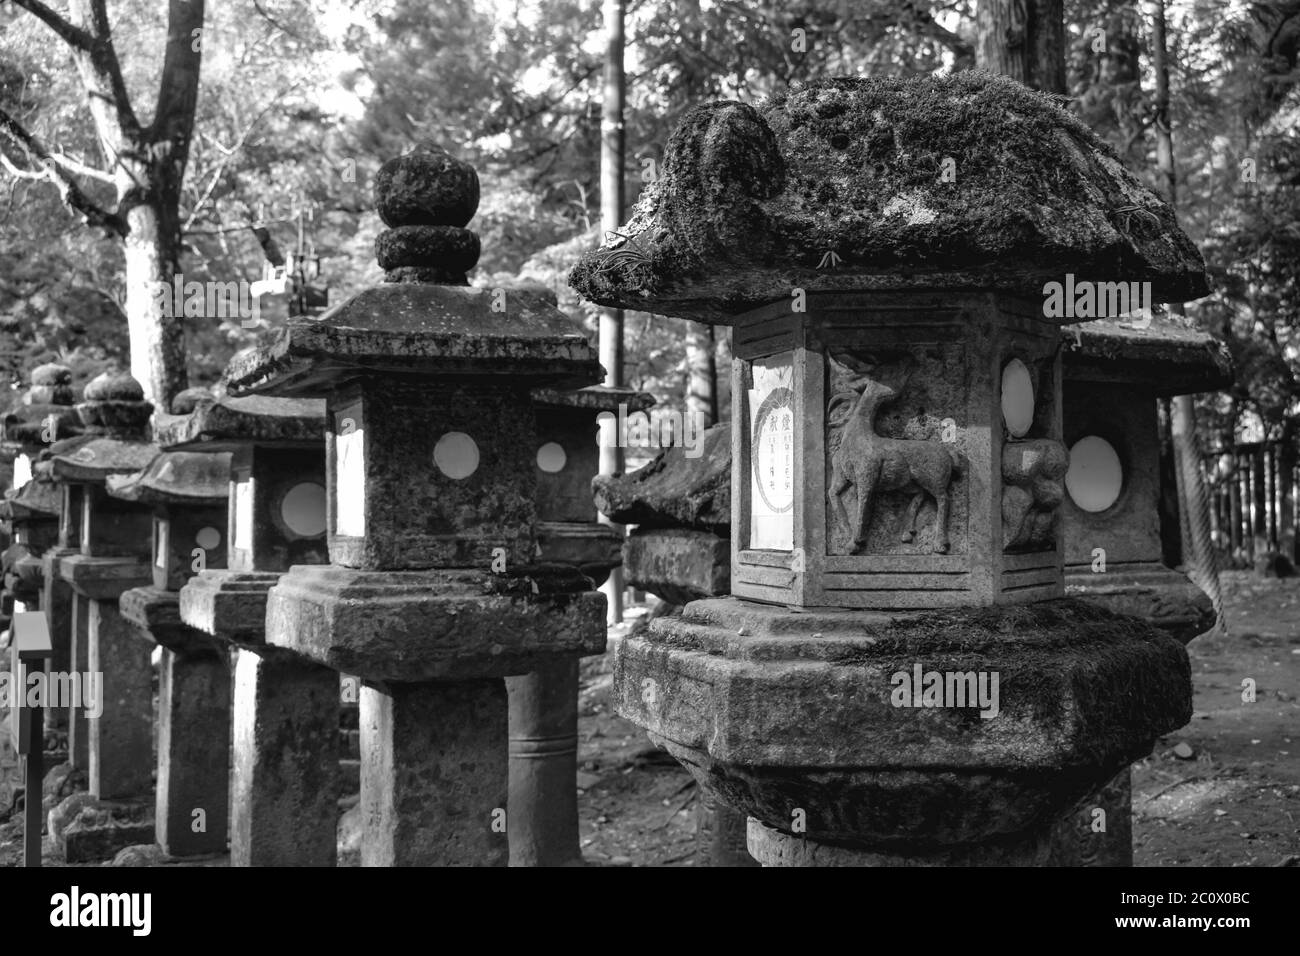 Black and white stone lanterns in the Kasuga shrine in Nara Japan Stock Photo